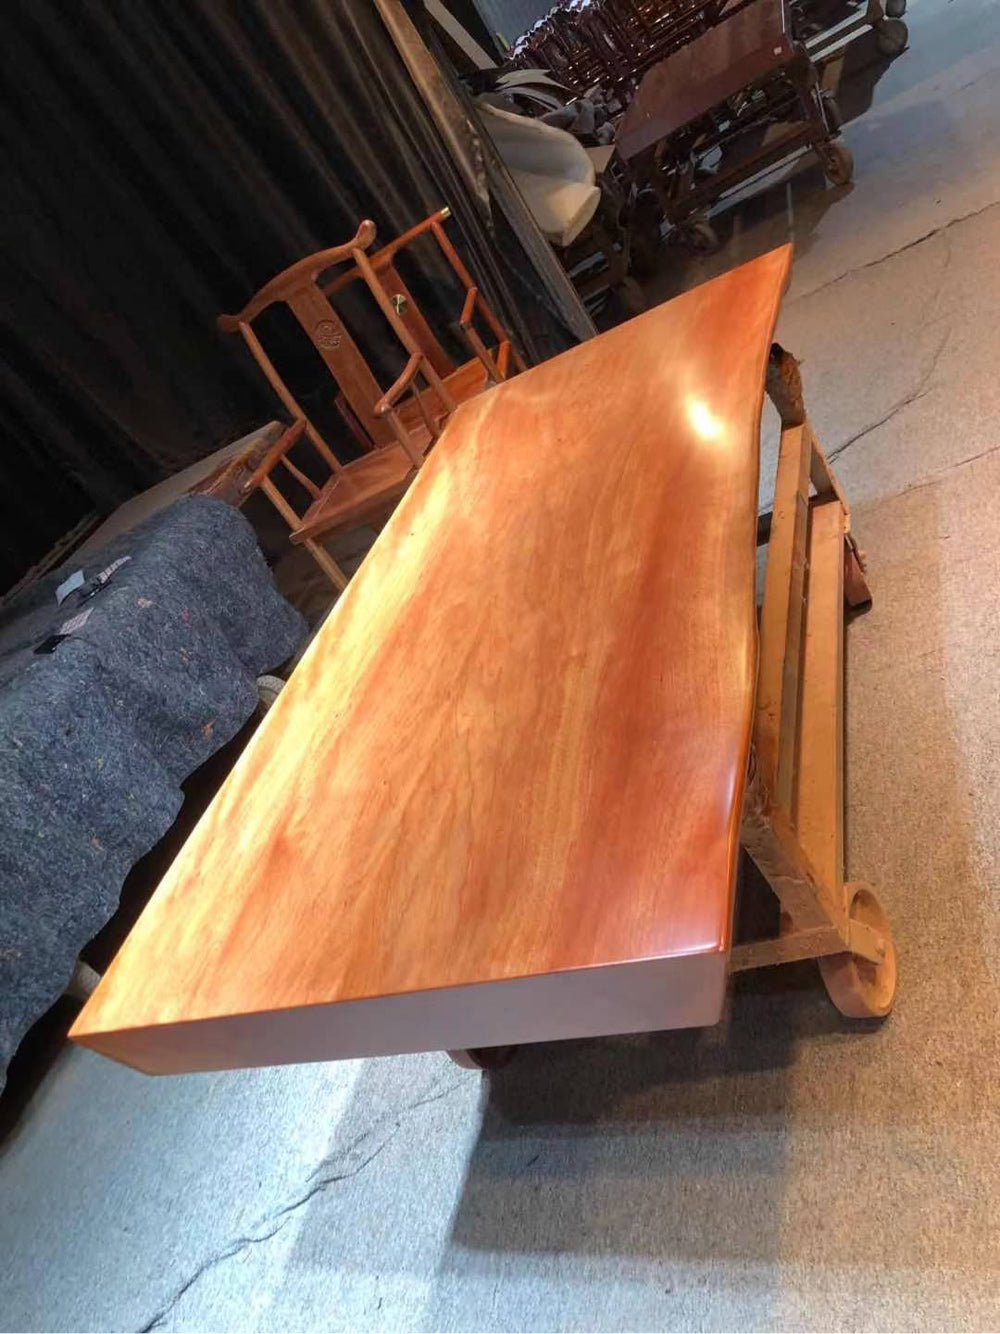 بابوا غينيا الجديدة سطح الطاولة بلاطة، طاولات بلاطة للبيع، قاعدة طاولة بلاطة